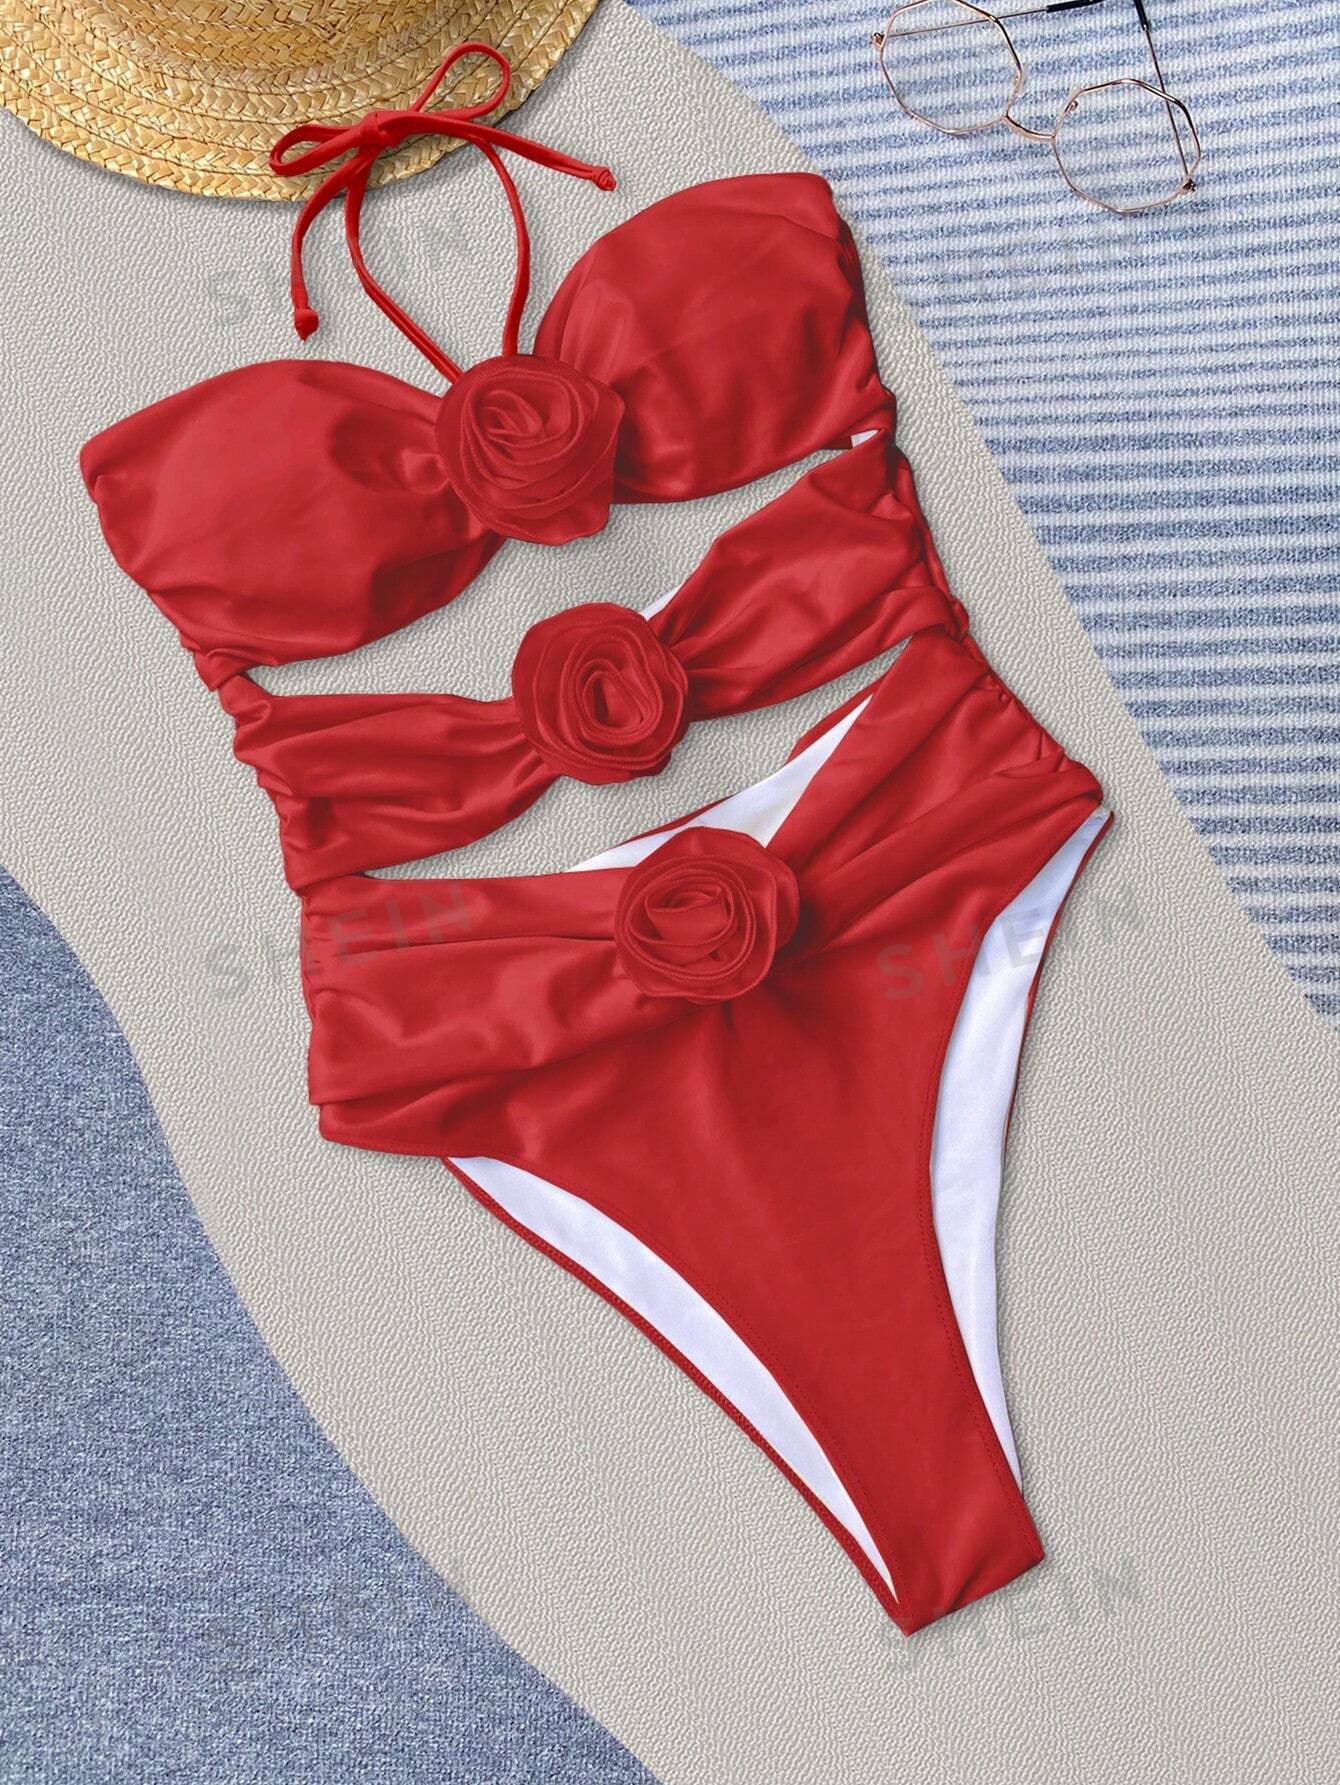 Bikinx сплошной цвет сексуальный ажурный купальник монокини с 3d цветочными деталями и вырезом на шее для женщин, красный